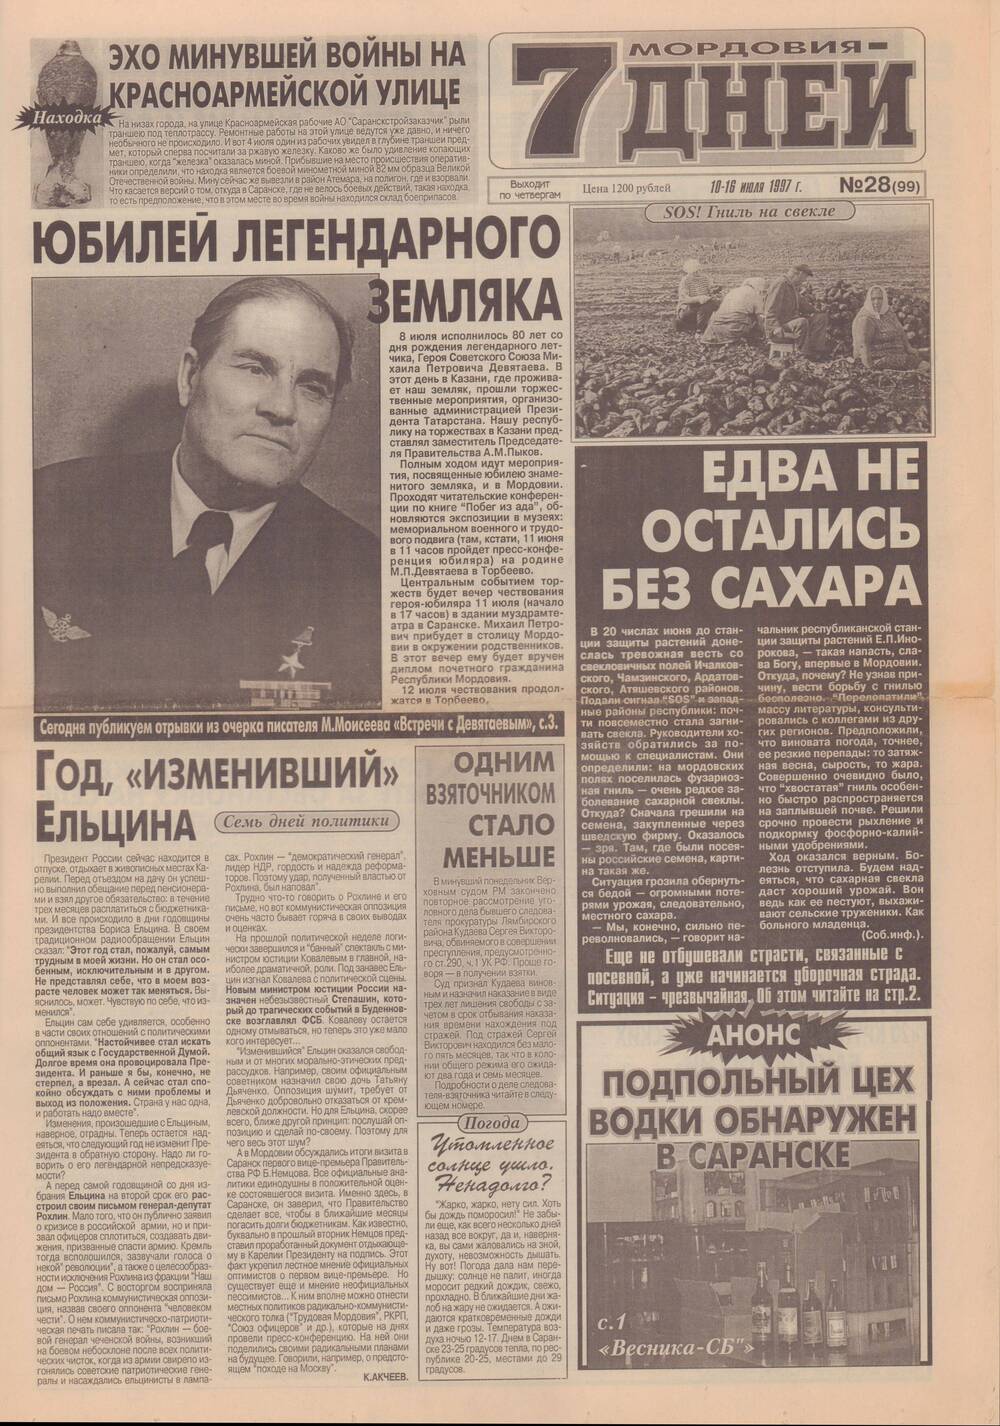 Листы из газеты Мордовия - 7 дней № 28 (99) с отрывком из очерка М.Моисеева Встречи с Девятаевым.